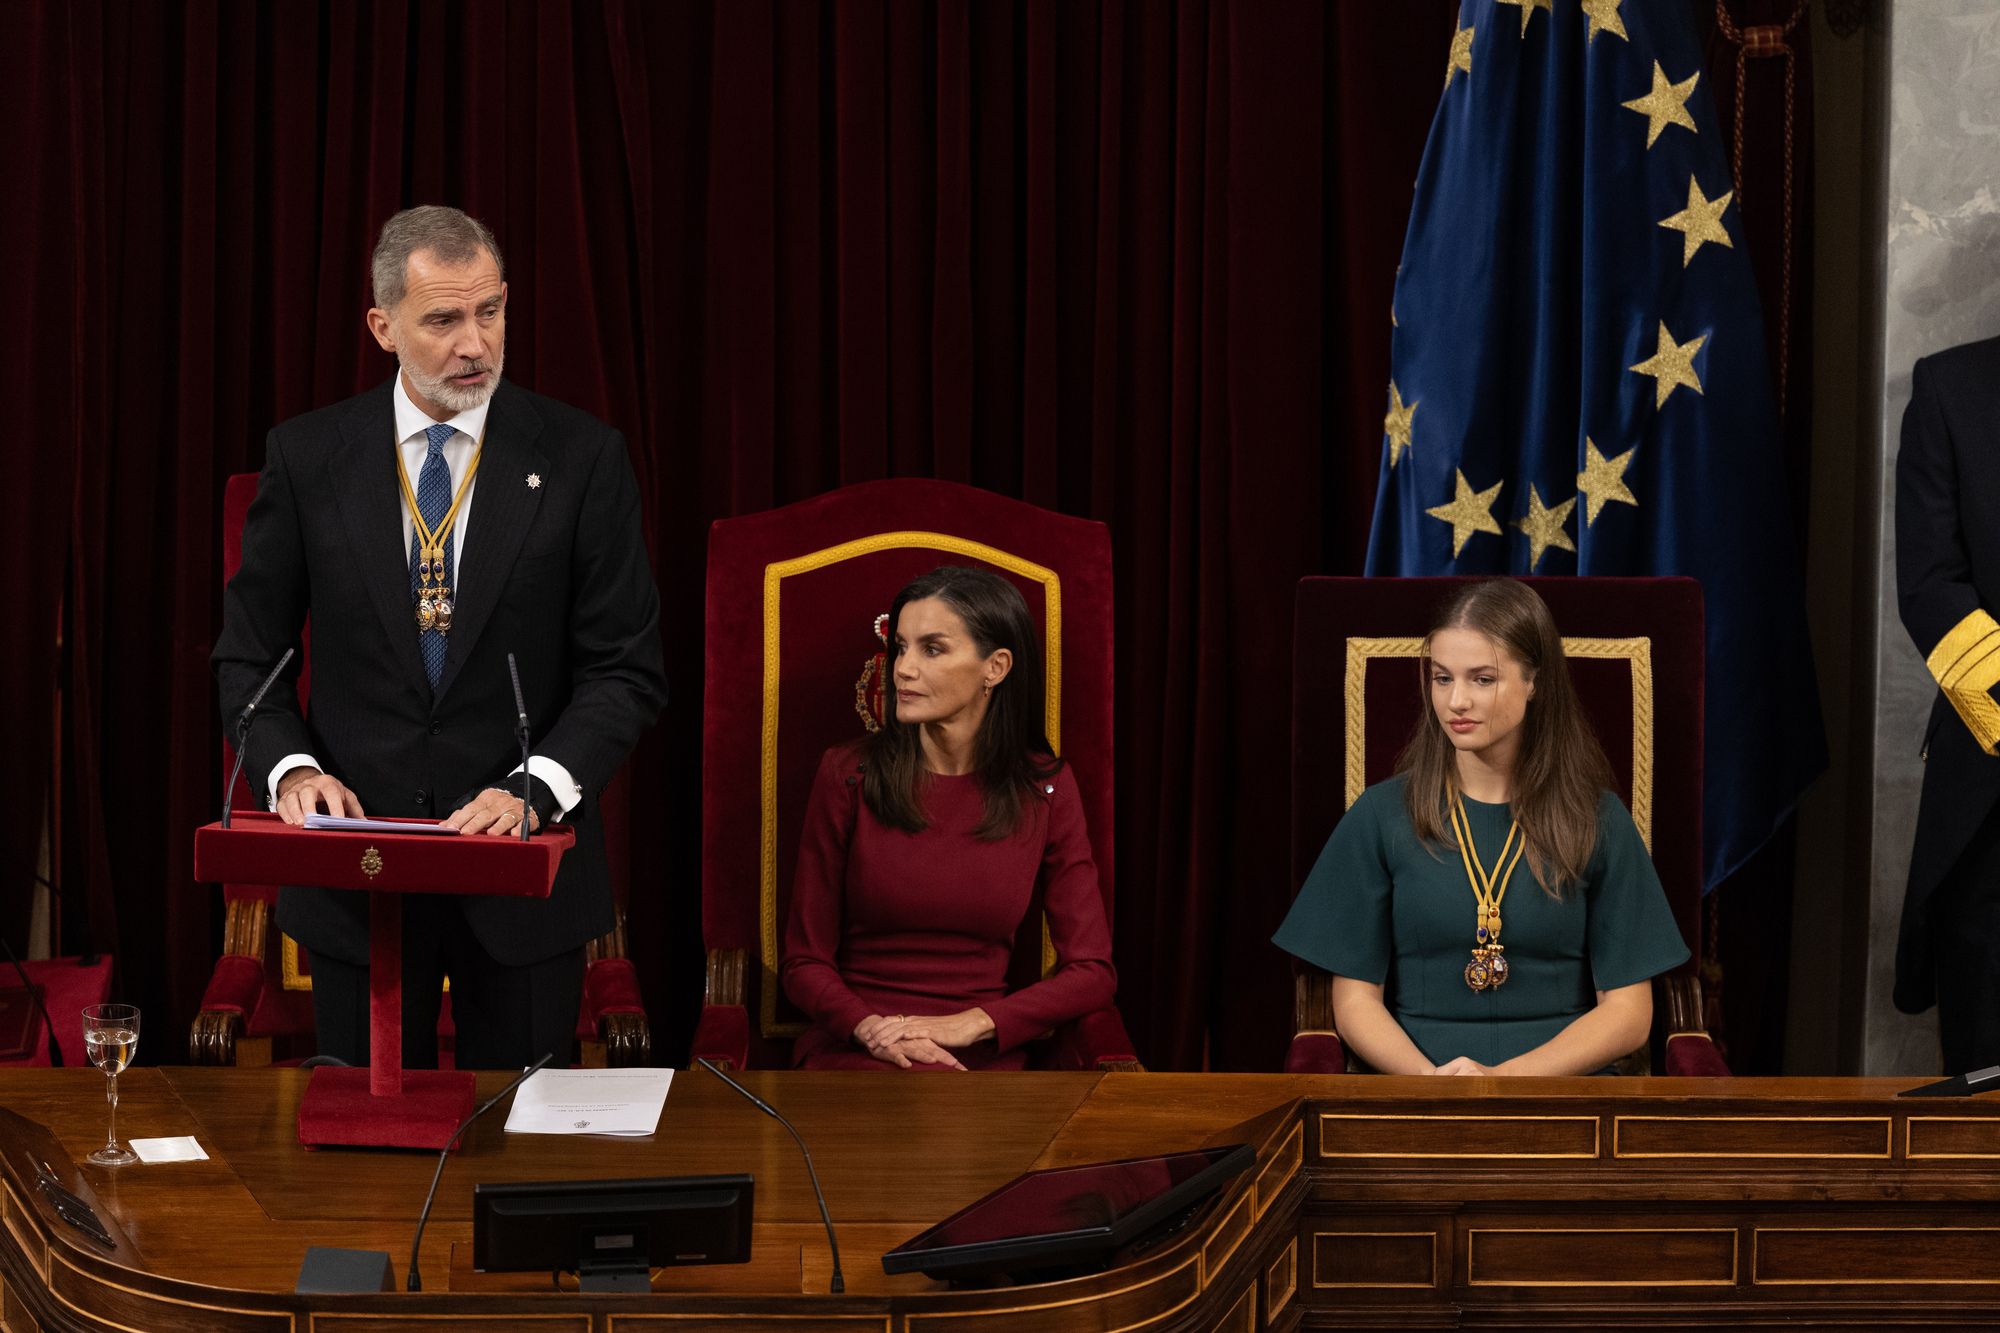 El Rey pide a los políticos "una España sólida y unida, sin divisiones ni enfrentamientos"